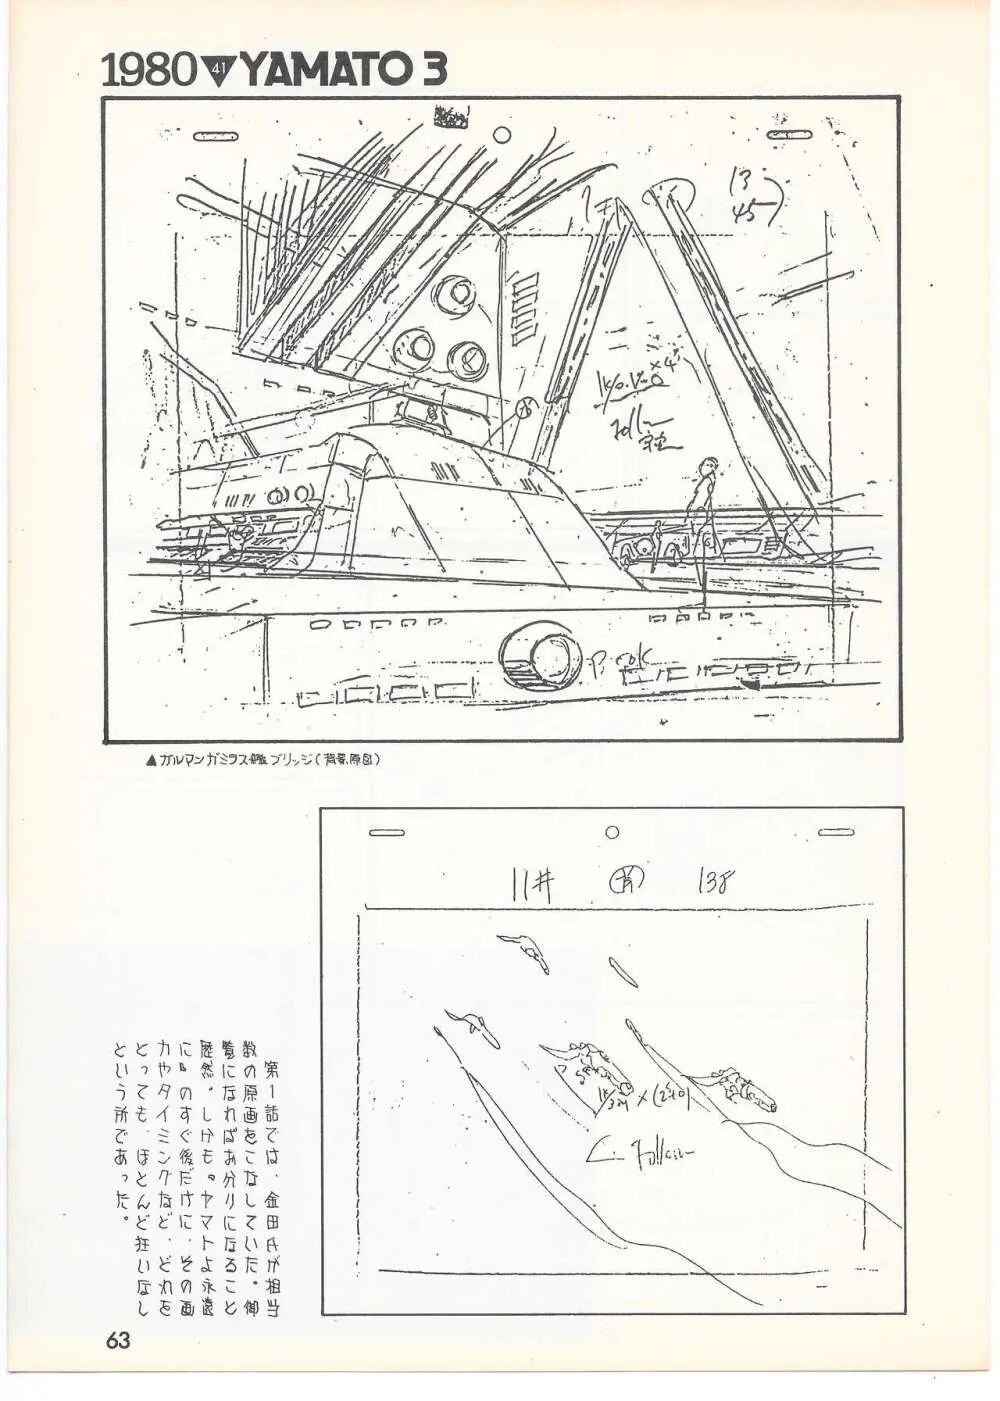 THE ANIMATOR 1 金田伊功特集号 60ページ